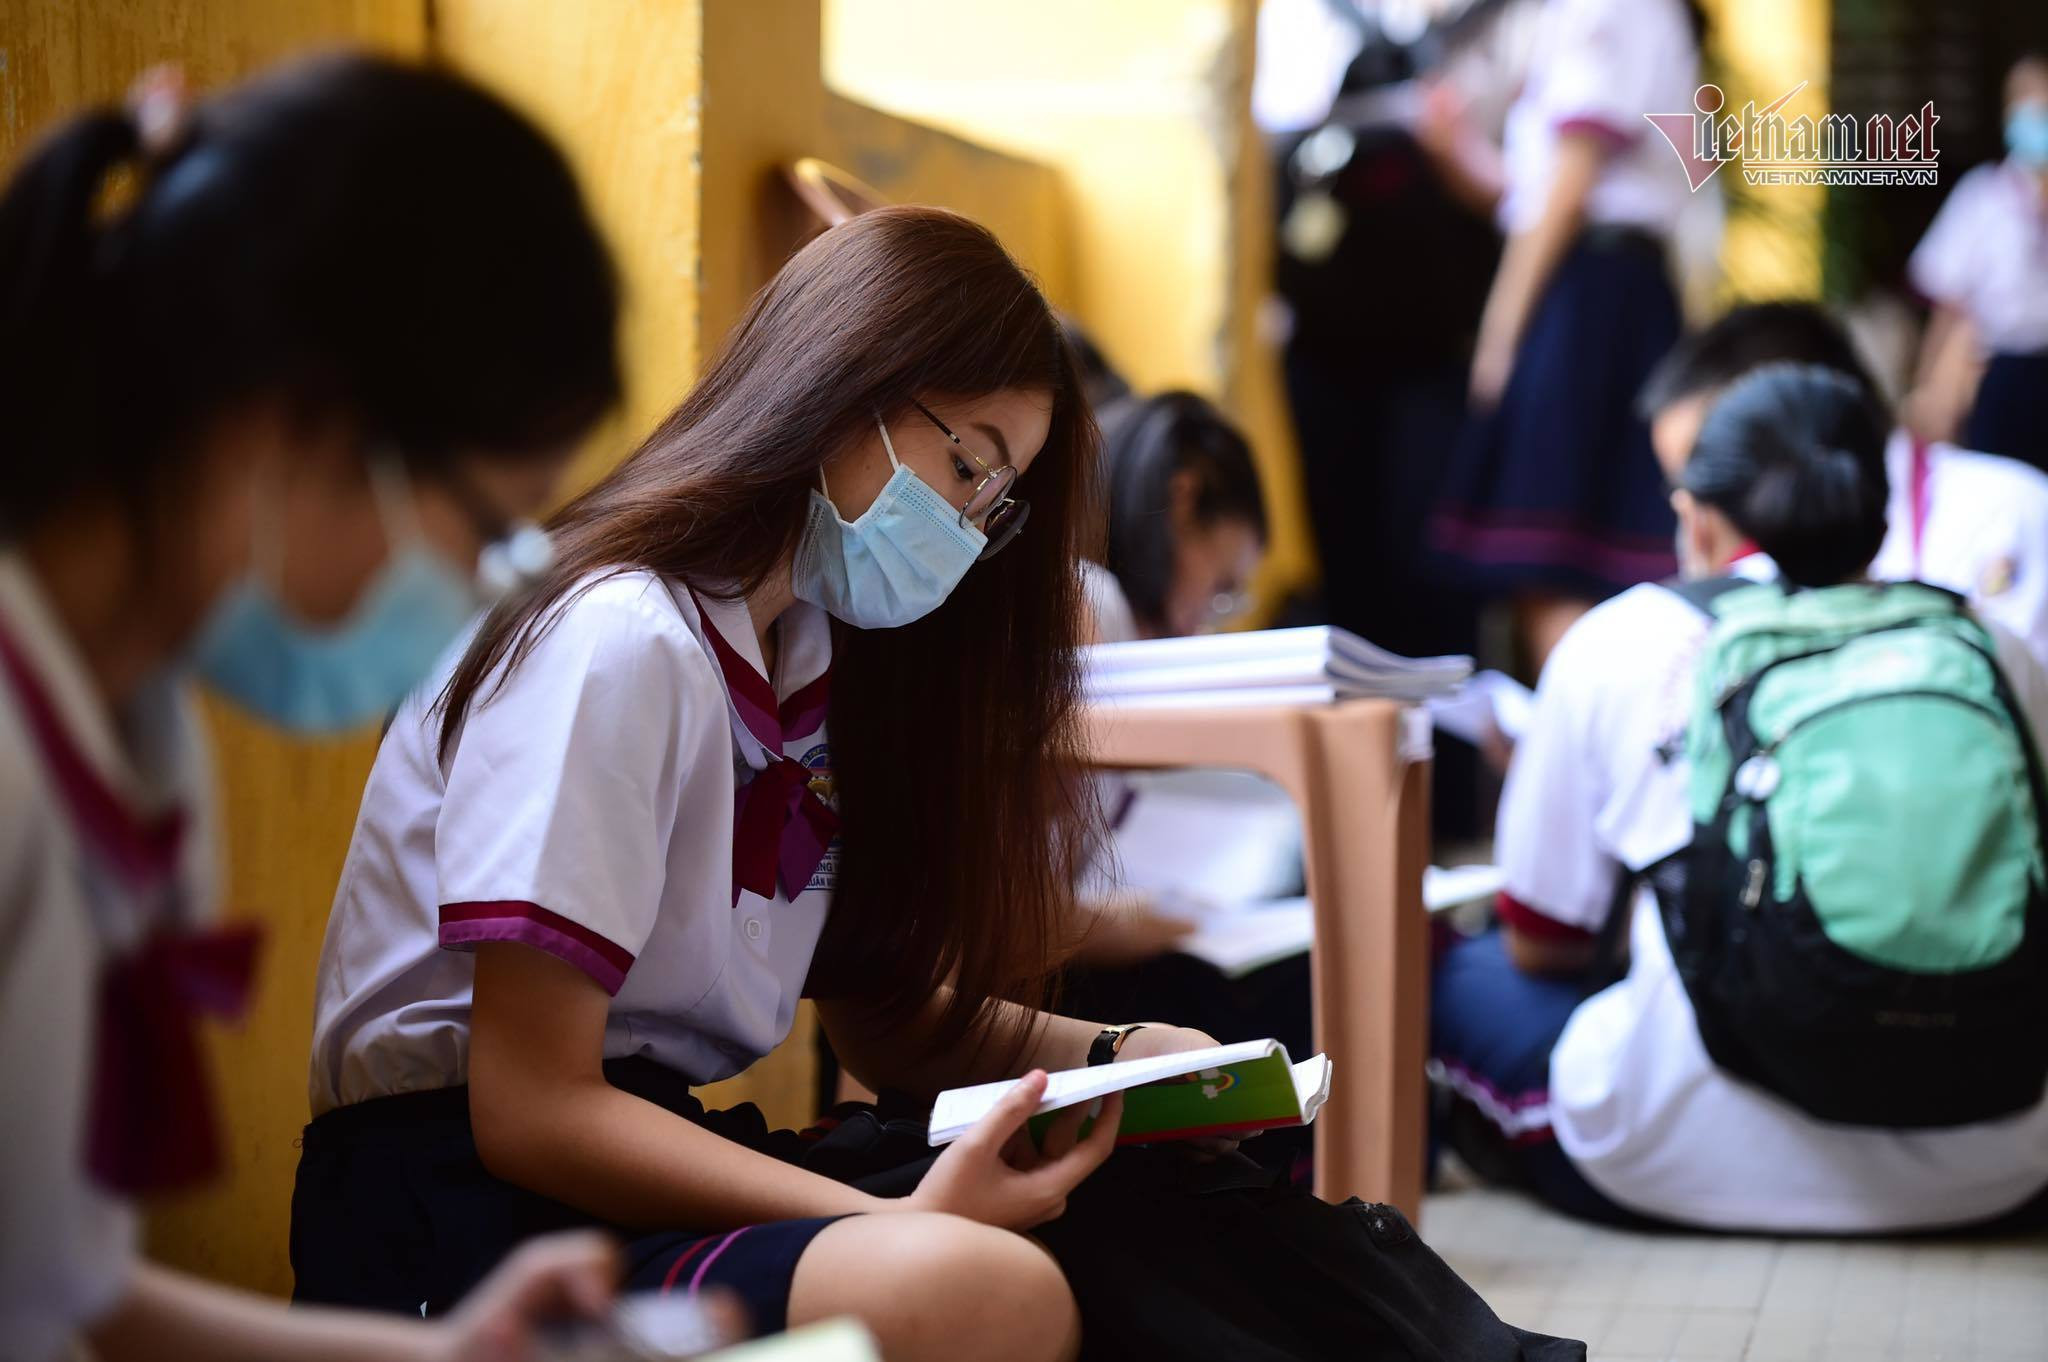 Điểm chuẩn các trường thuộc ĐH Đà Nẵng năm 2021